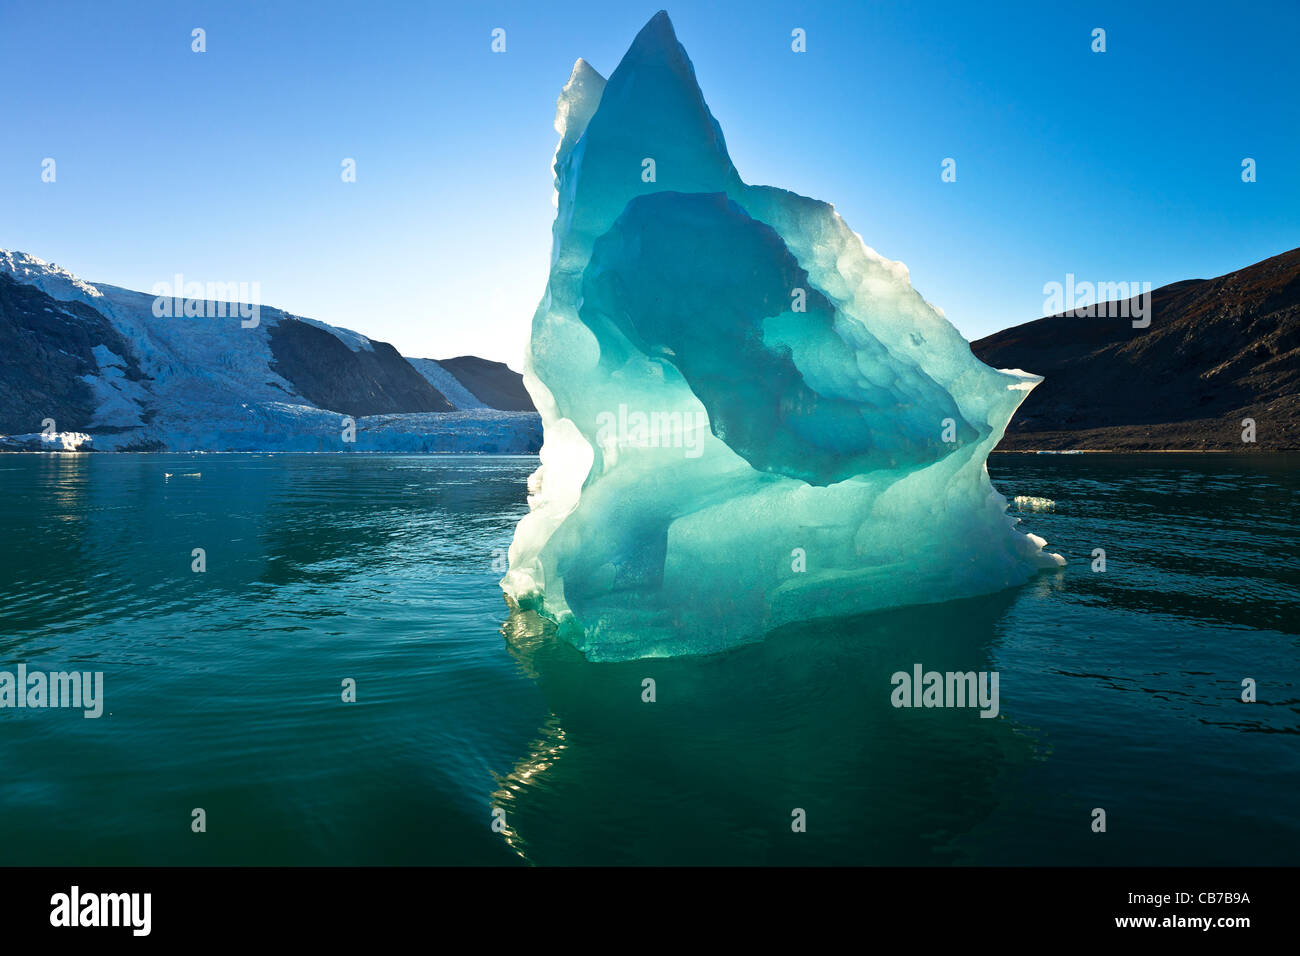 La glace de glacier, Evighedsfjorden, ou 'eternity' Fjord, dans l'ouest du Groenland Banque D'Images